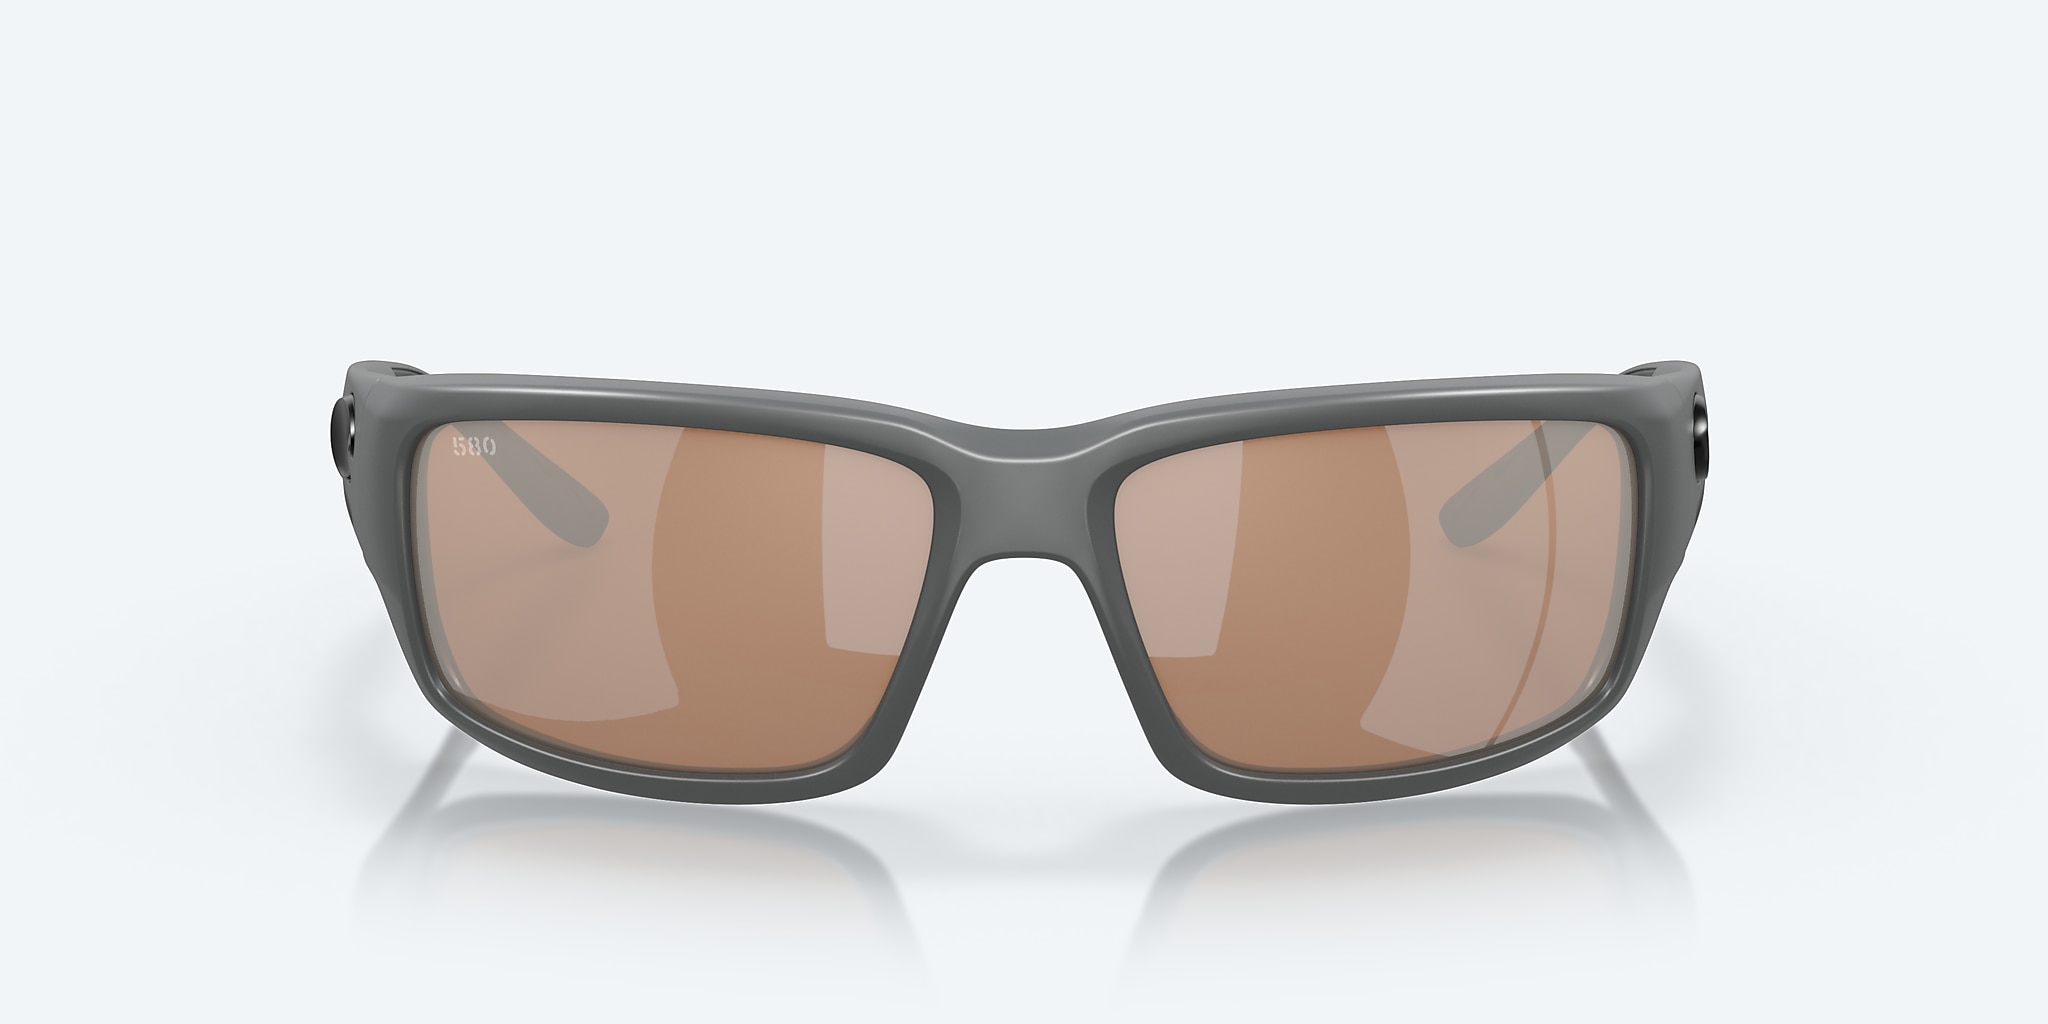 Fantail Polarized Sunglasses in Copper Silver Mirror